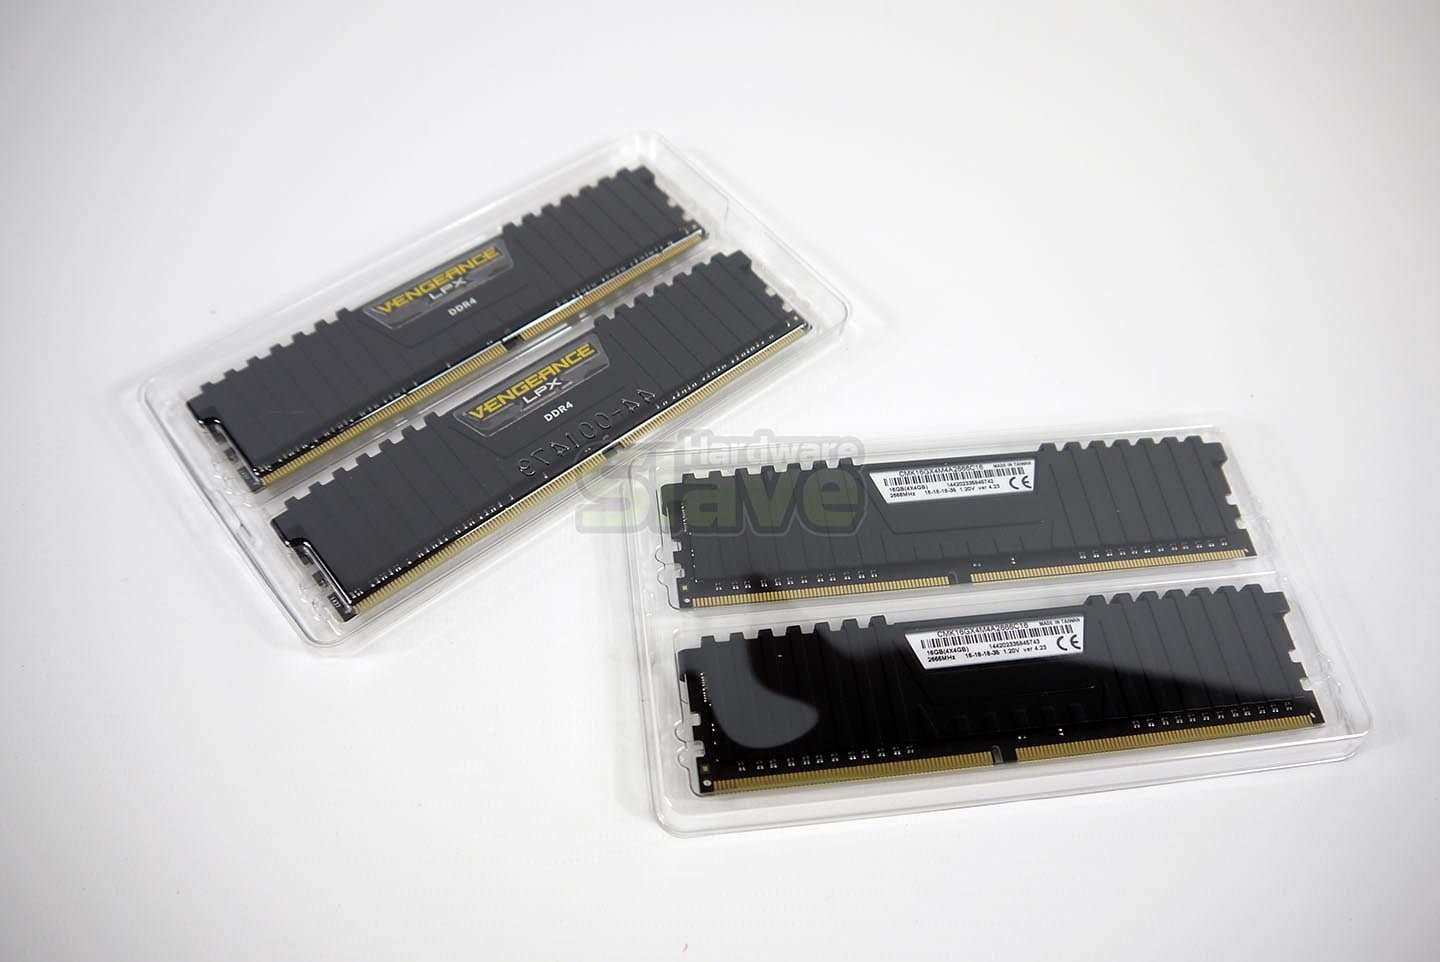 Corsair Vengeance LPX DDR4 2666Mhz 16Gb Review